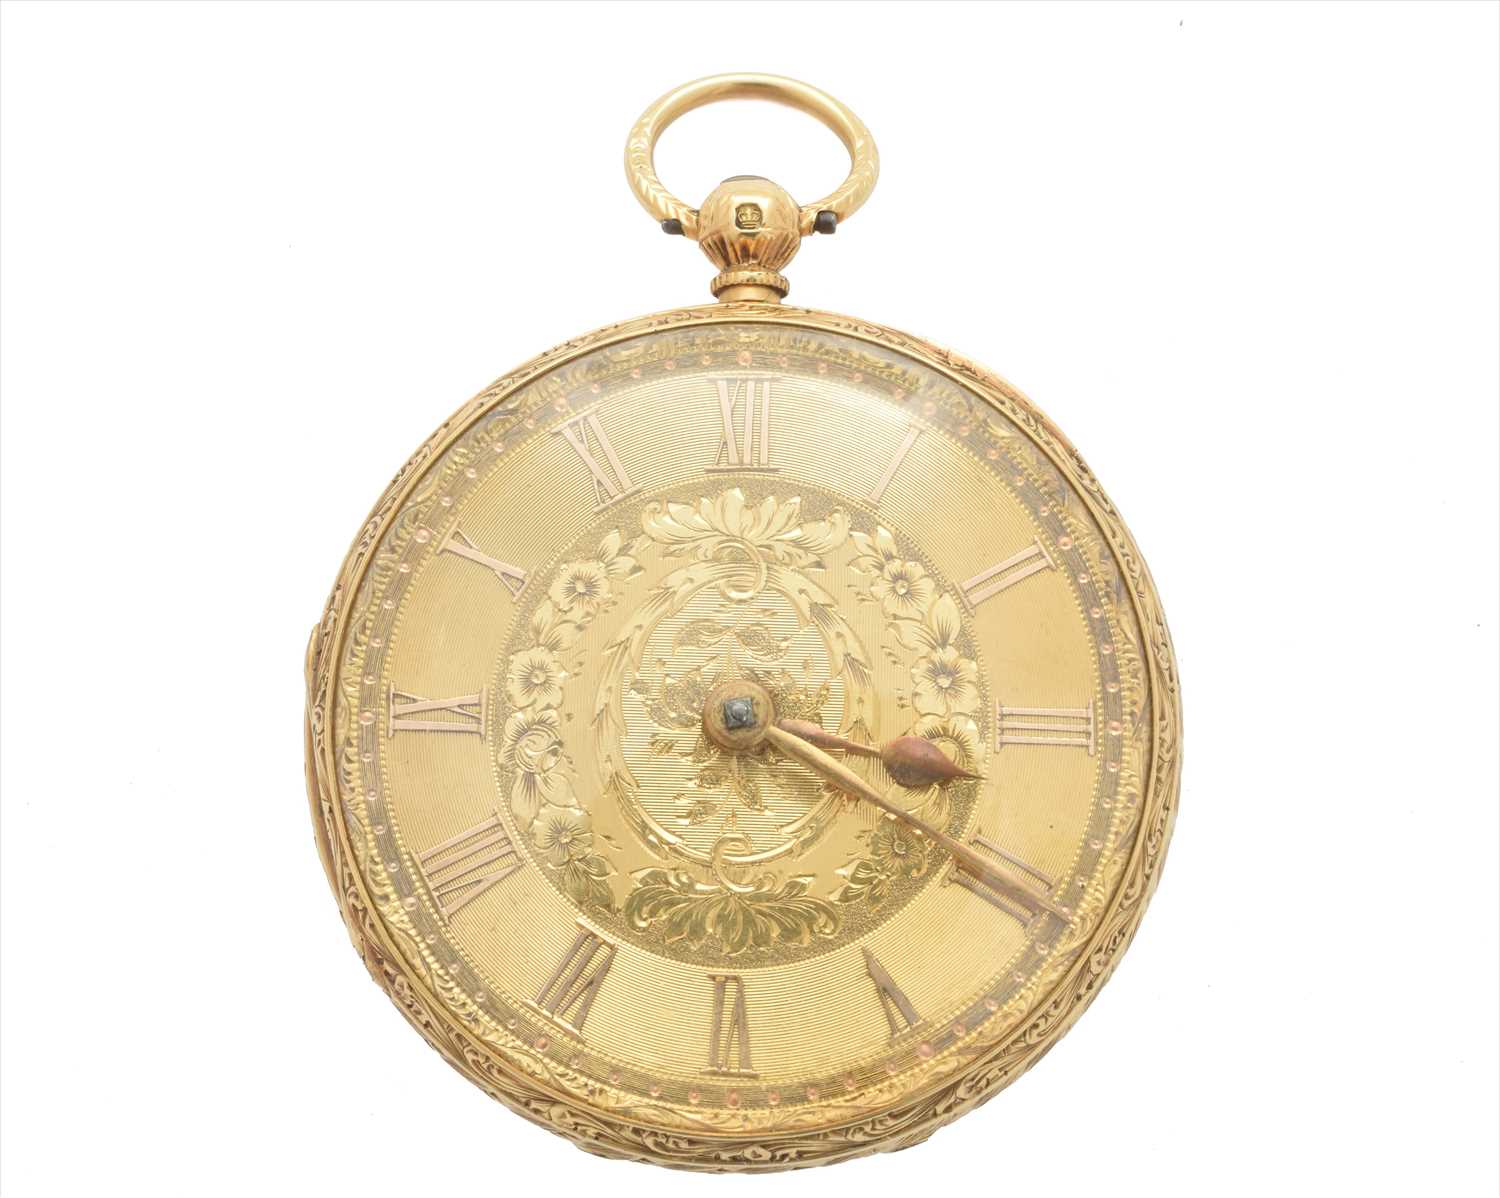 Lot 384 - An 18ct gold open face pocket watch